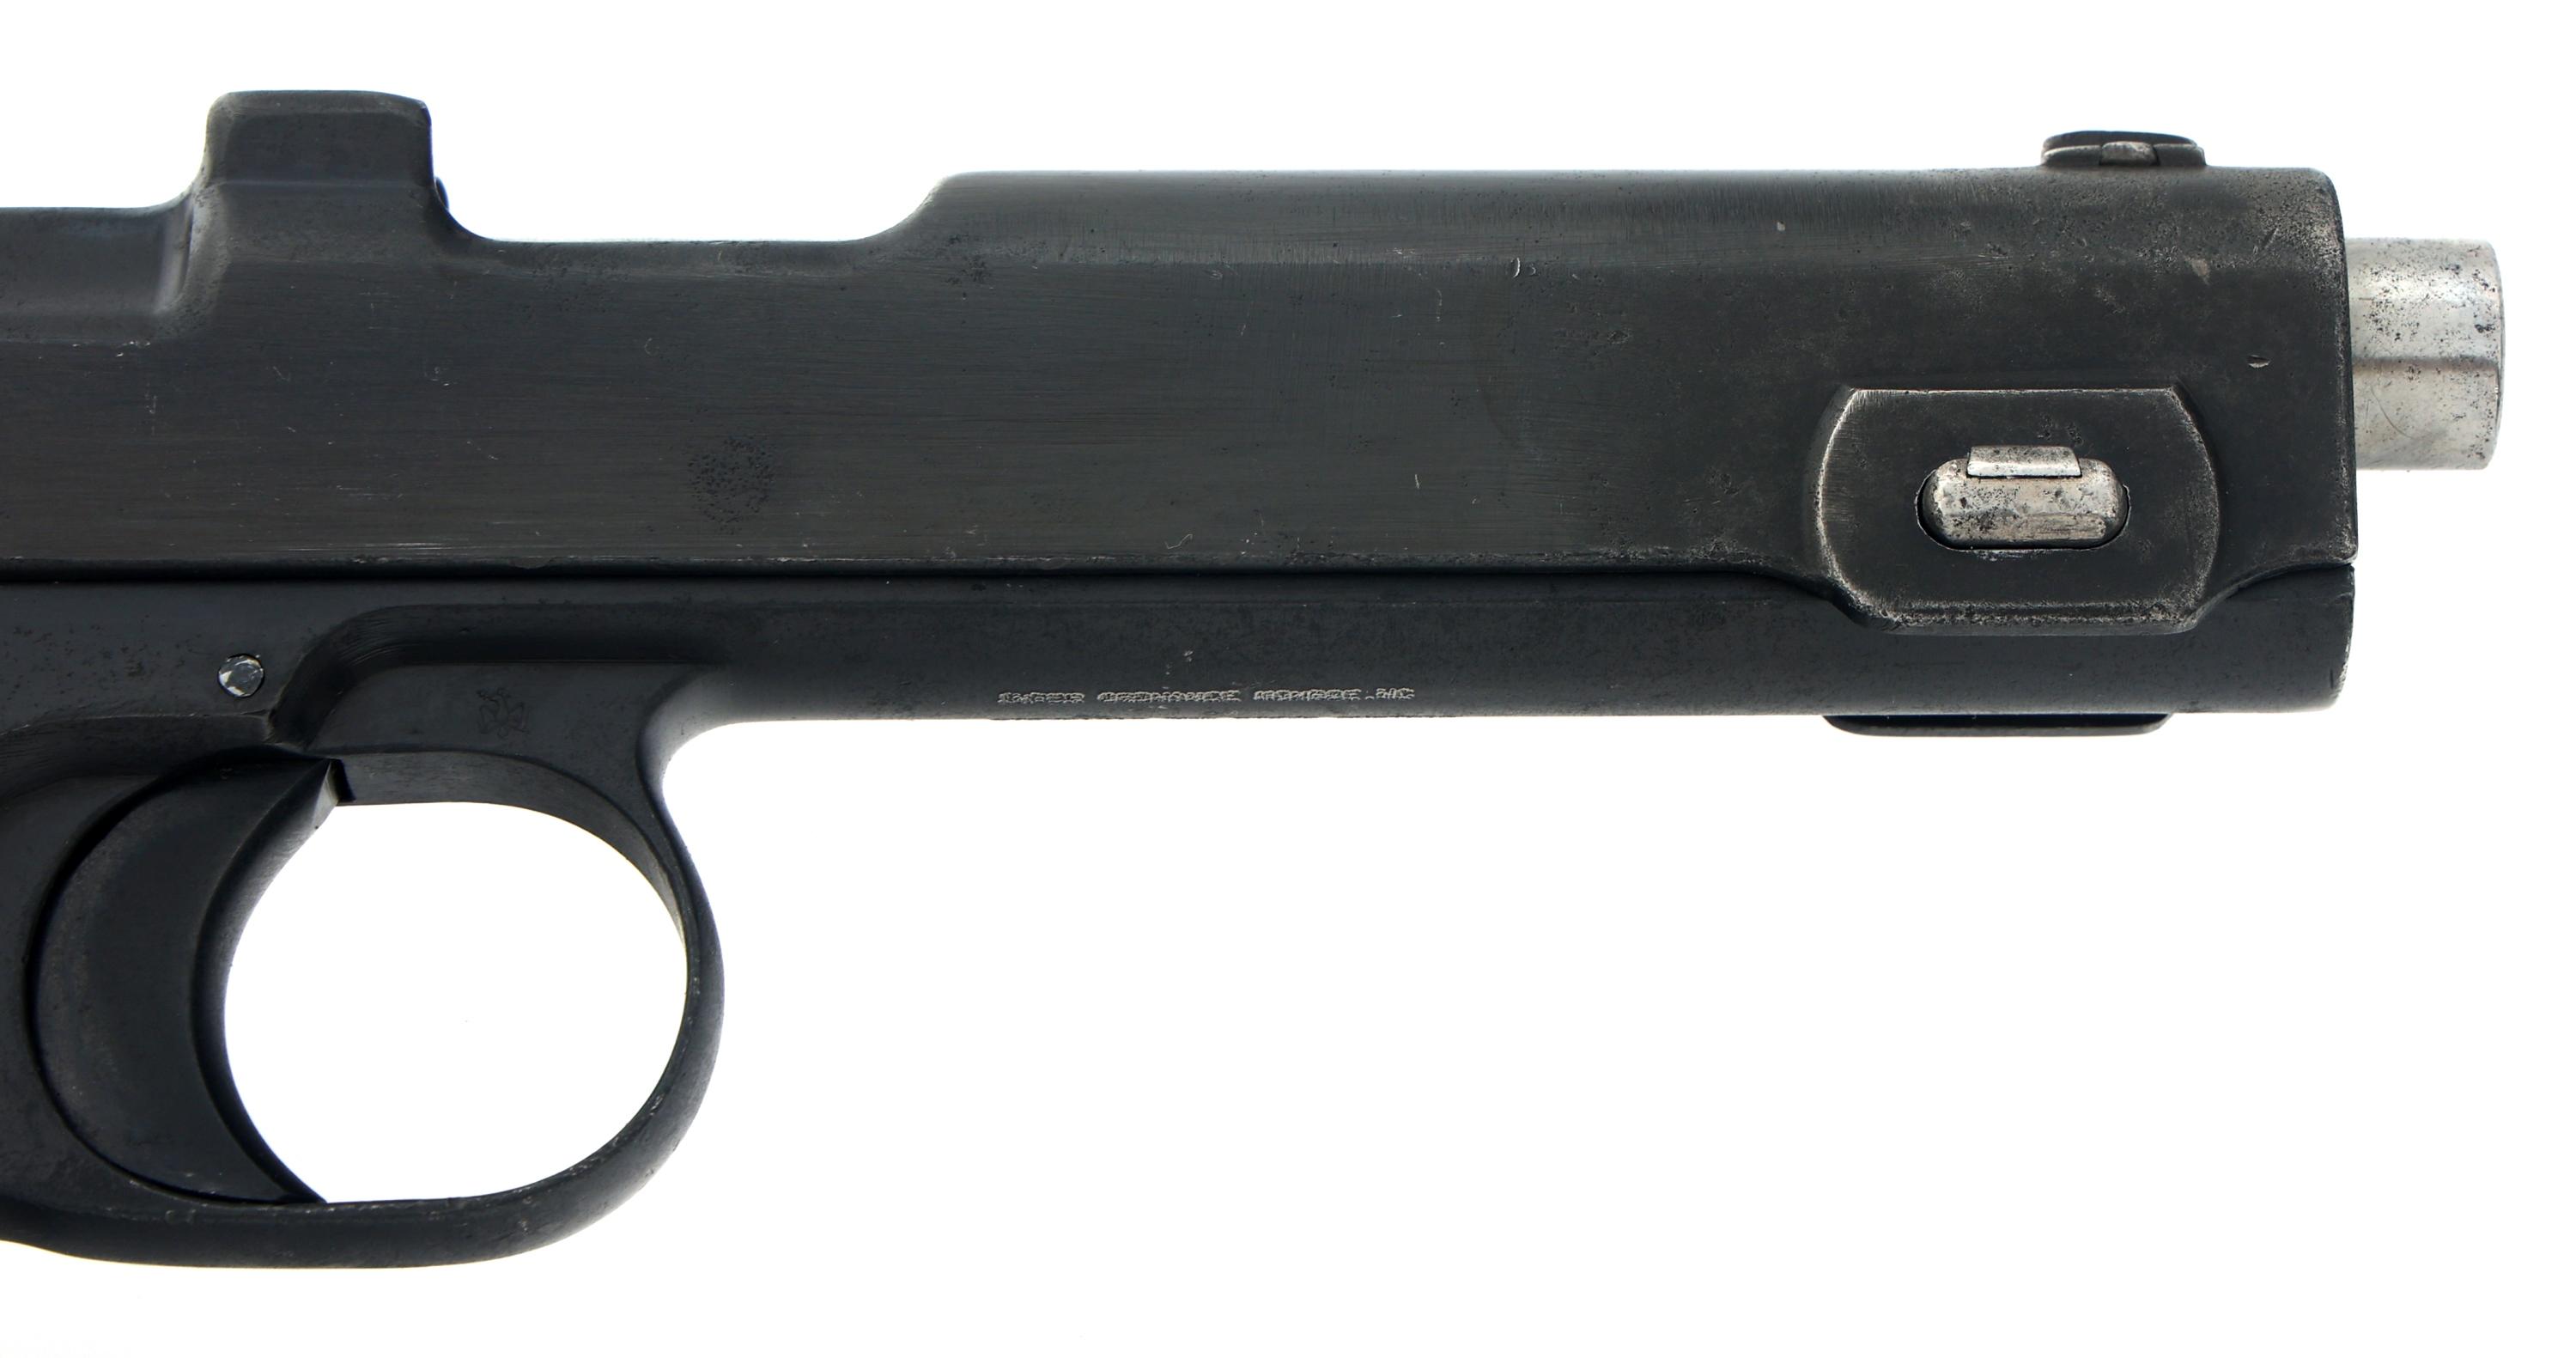 1914 STEYR MODEL 1912 9X23mm CALIBER PISTOL